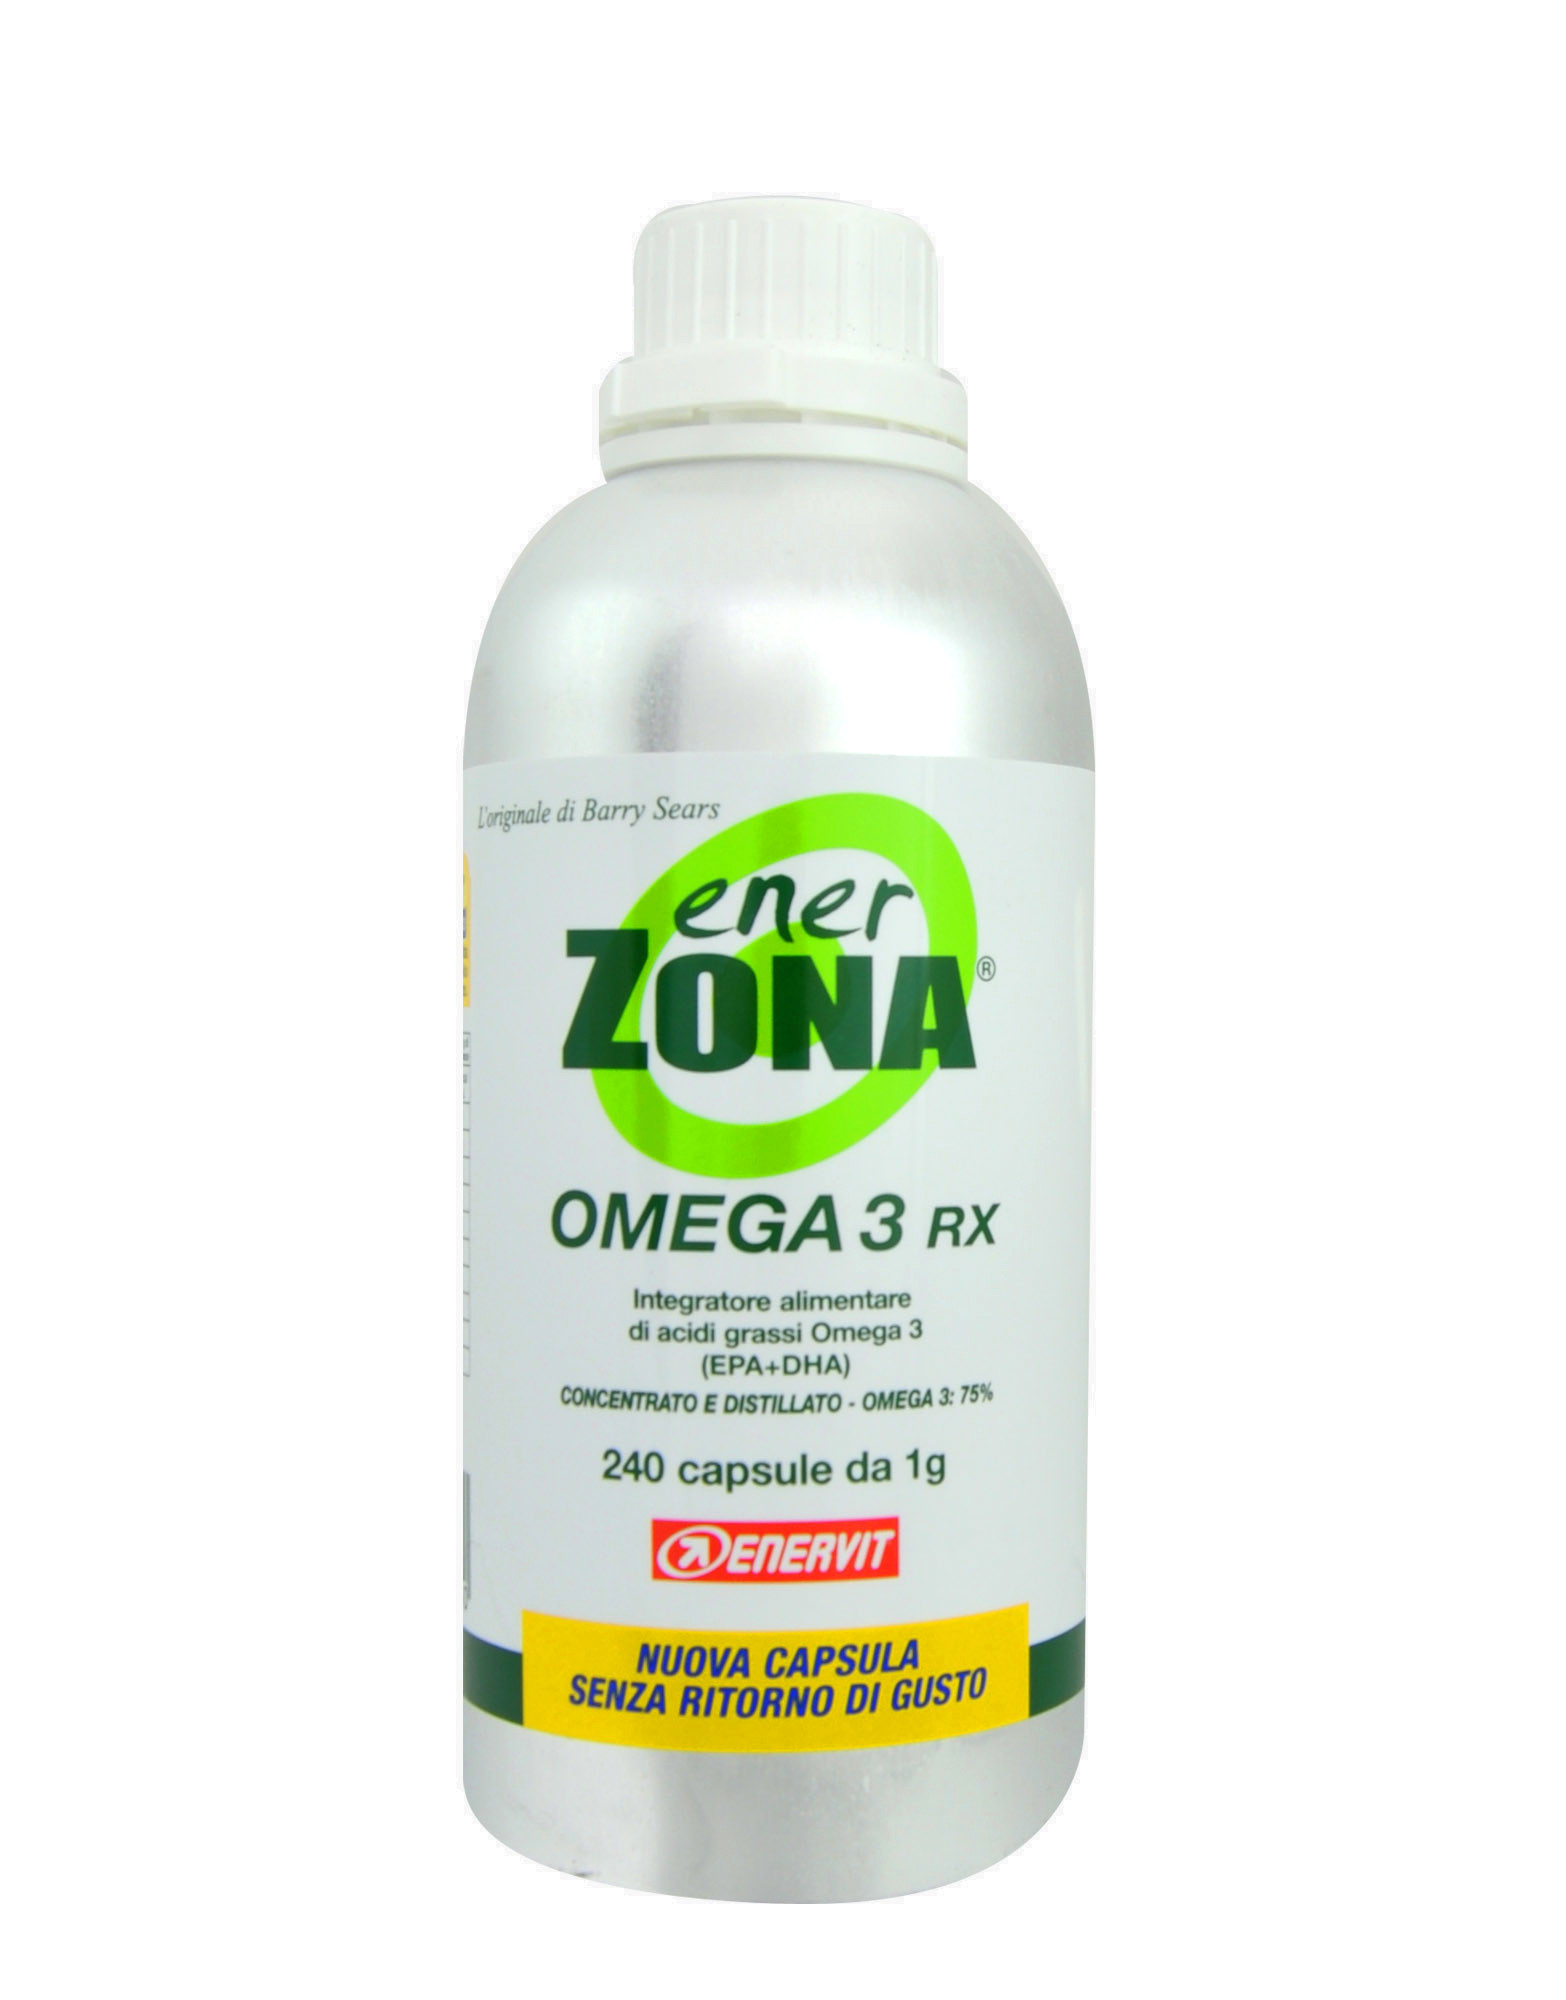 Comprar EnerZona Omega 3 Rx en Gran Farmacia Andorra Online ácidos grasos Omega 3 obtenido a través de un exhaustivo proceso de destilación molecular.